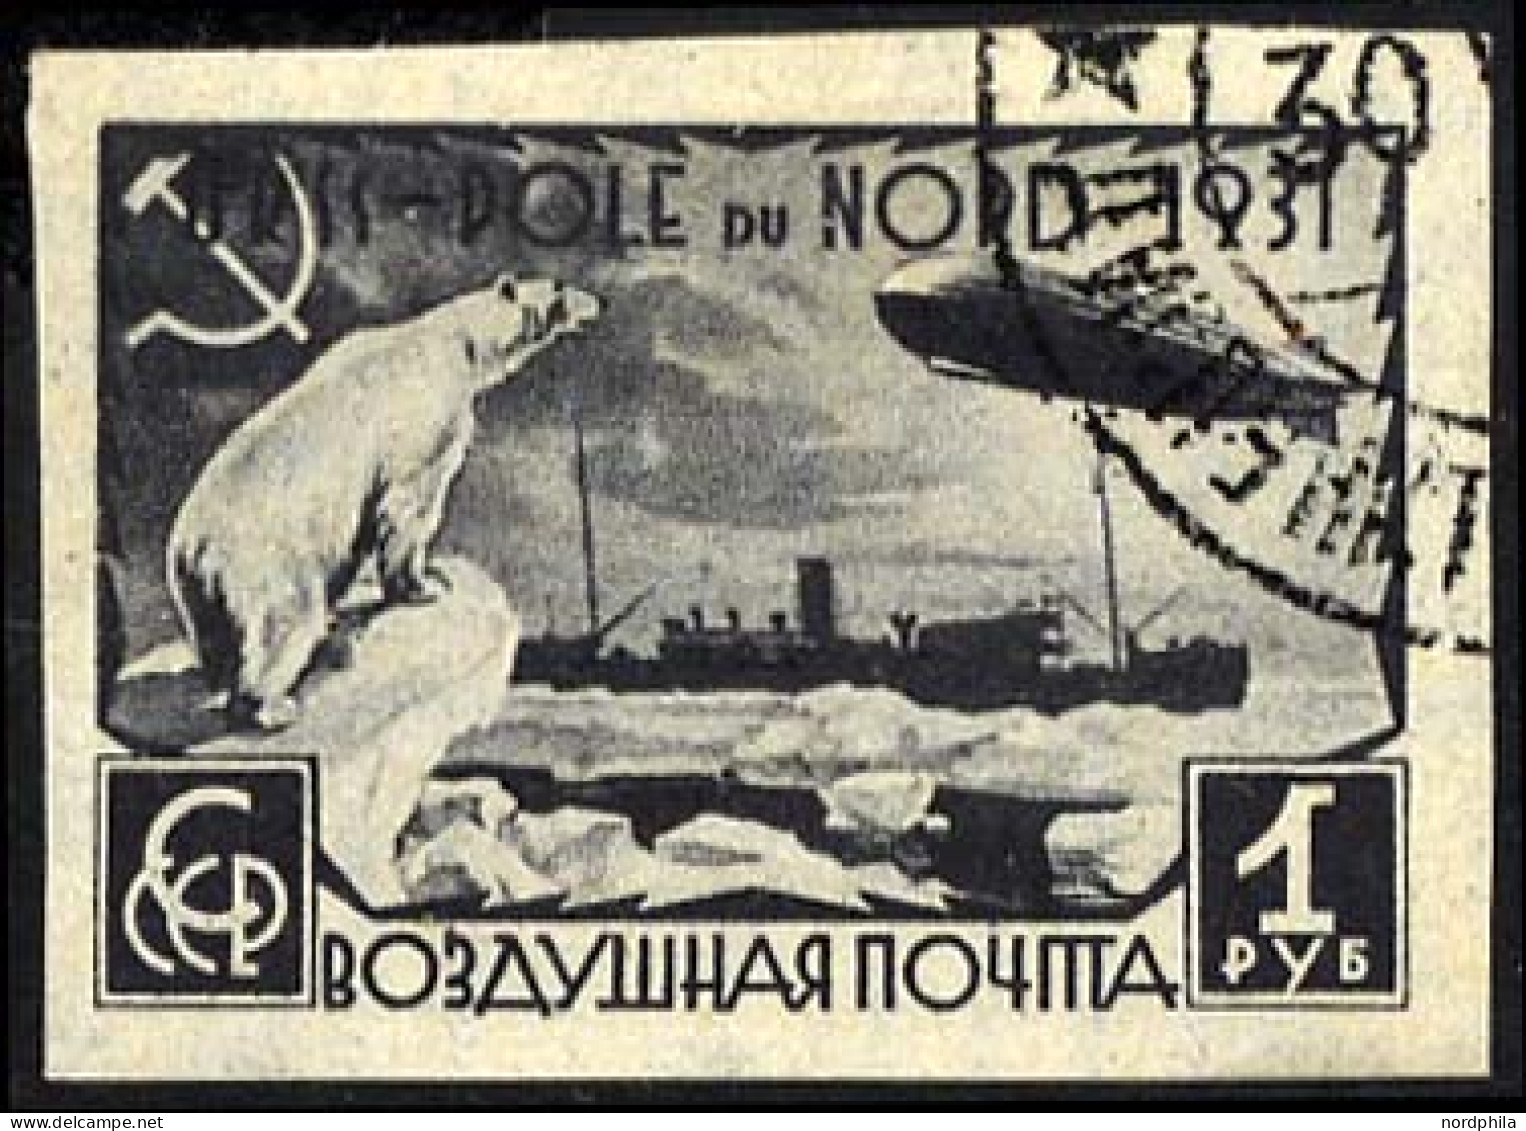 SOWJETUNION 404B O, 1931, 1 R. Polarfahrt, Ungezähnt, Pracht, Mi. 60.- - Gebruikt